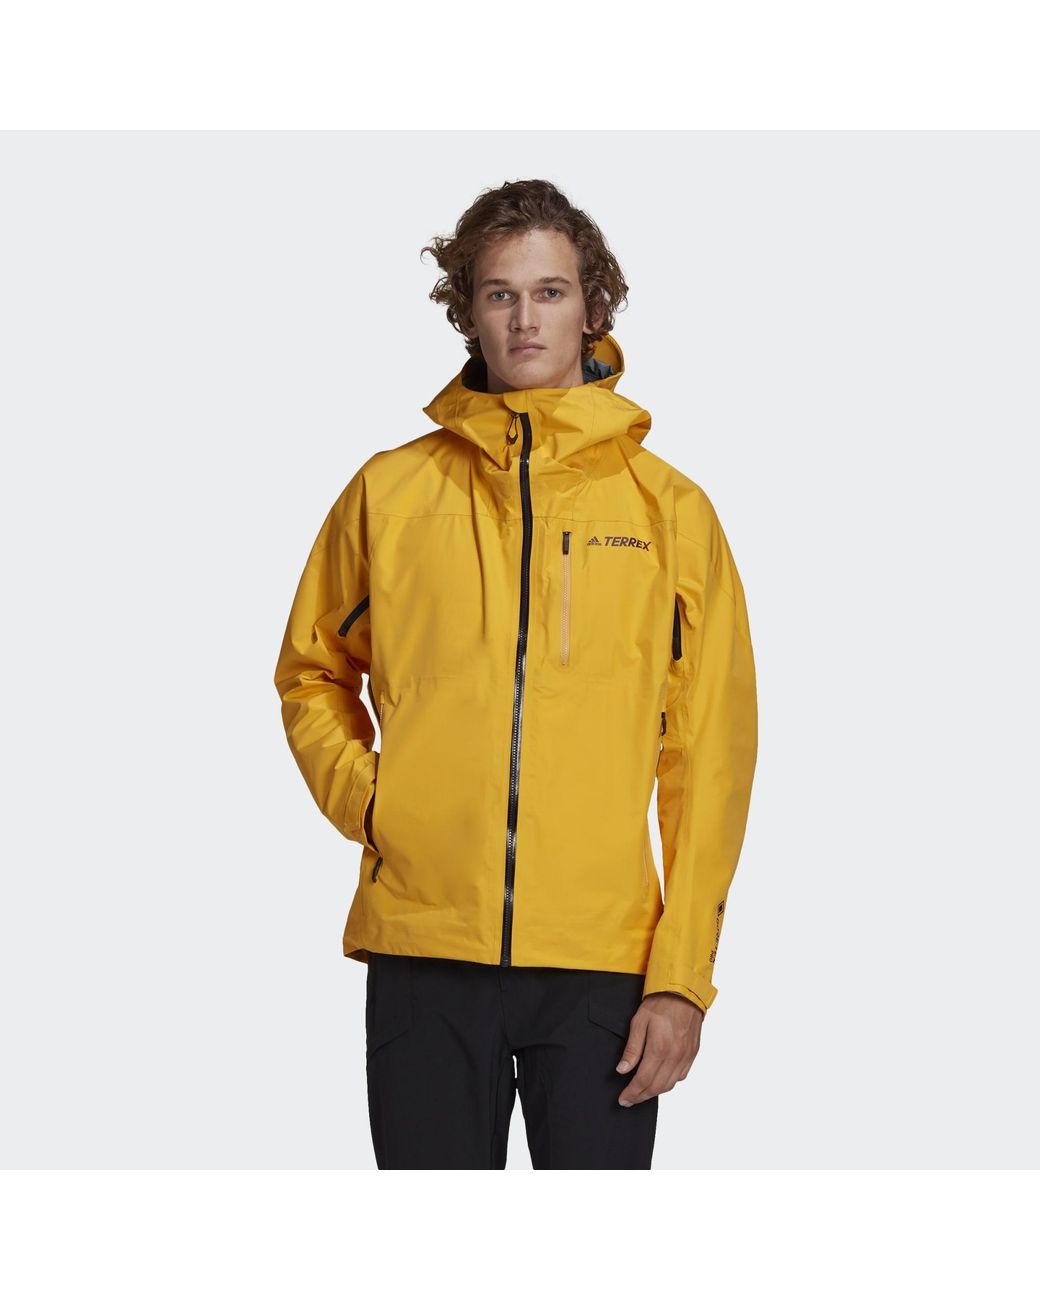 adidas Terrex Techrock Gore-tex Pro Jacket in Yellow for Men | Lyst UK